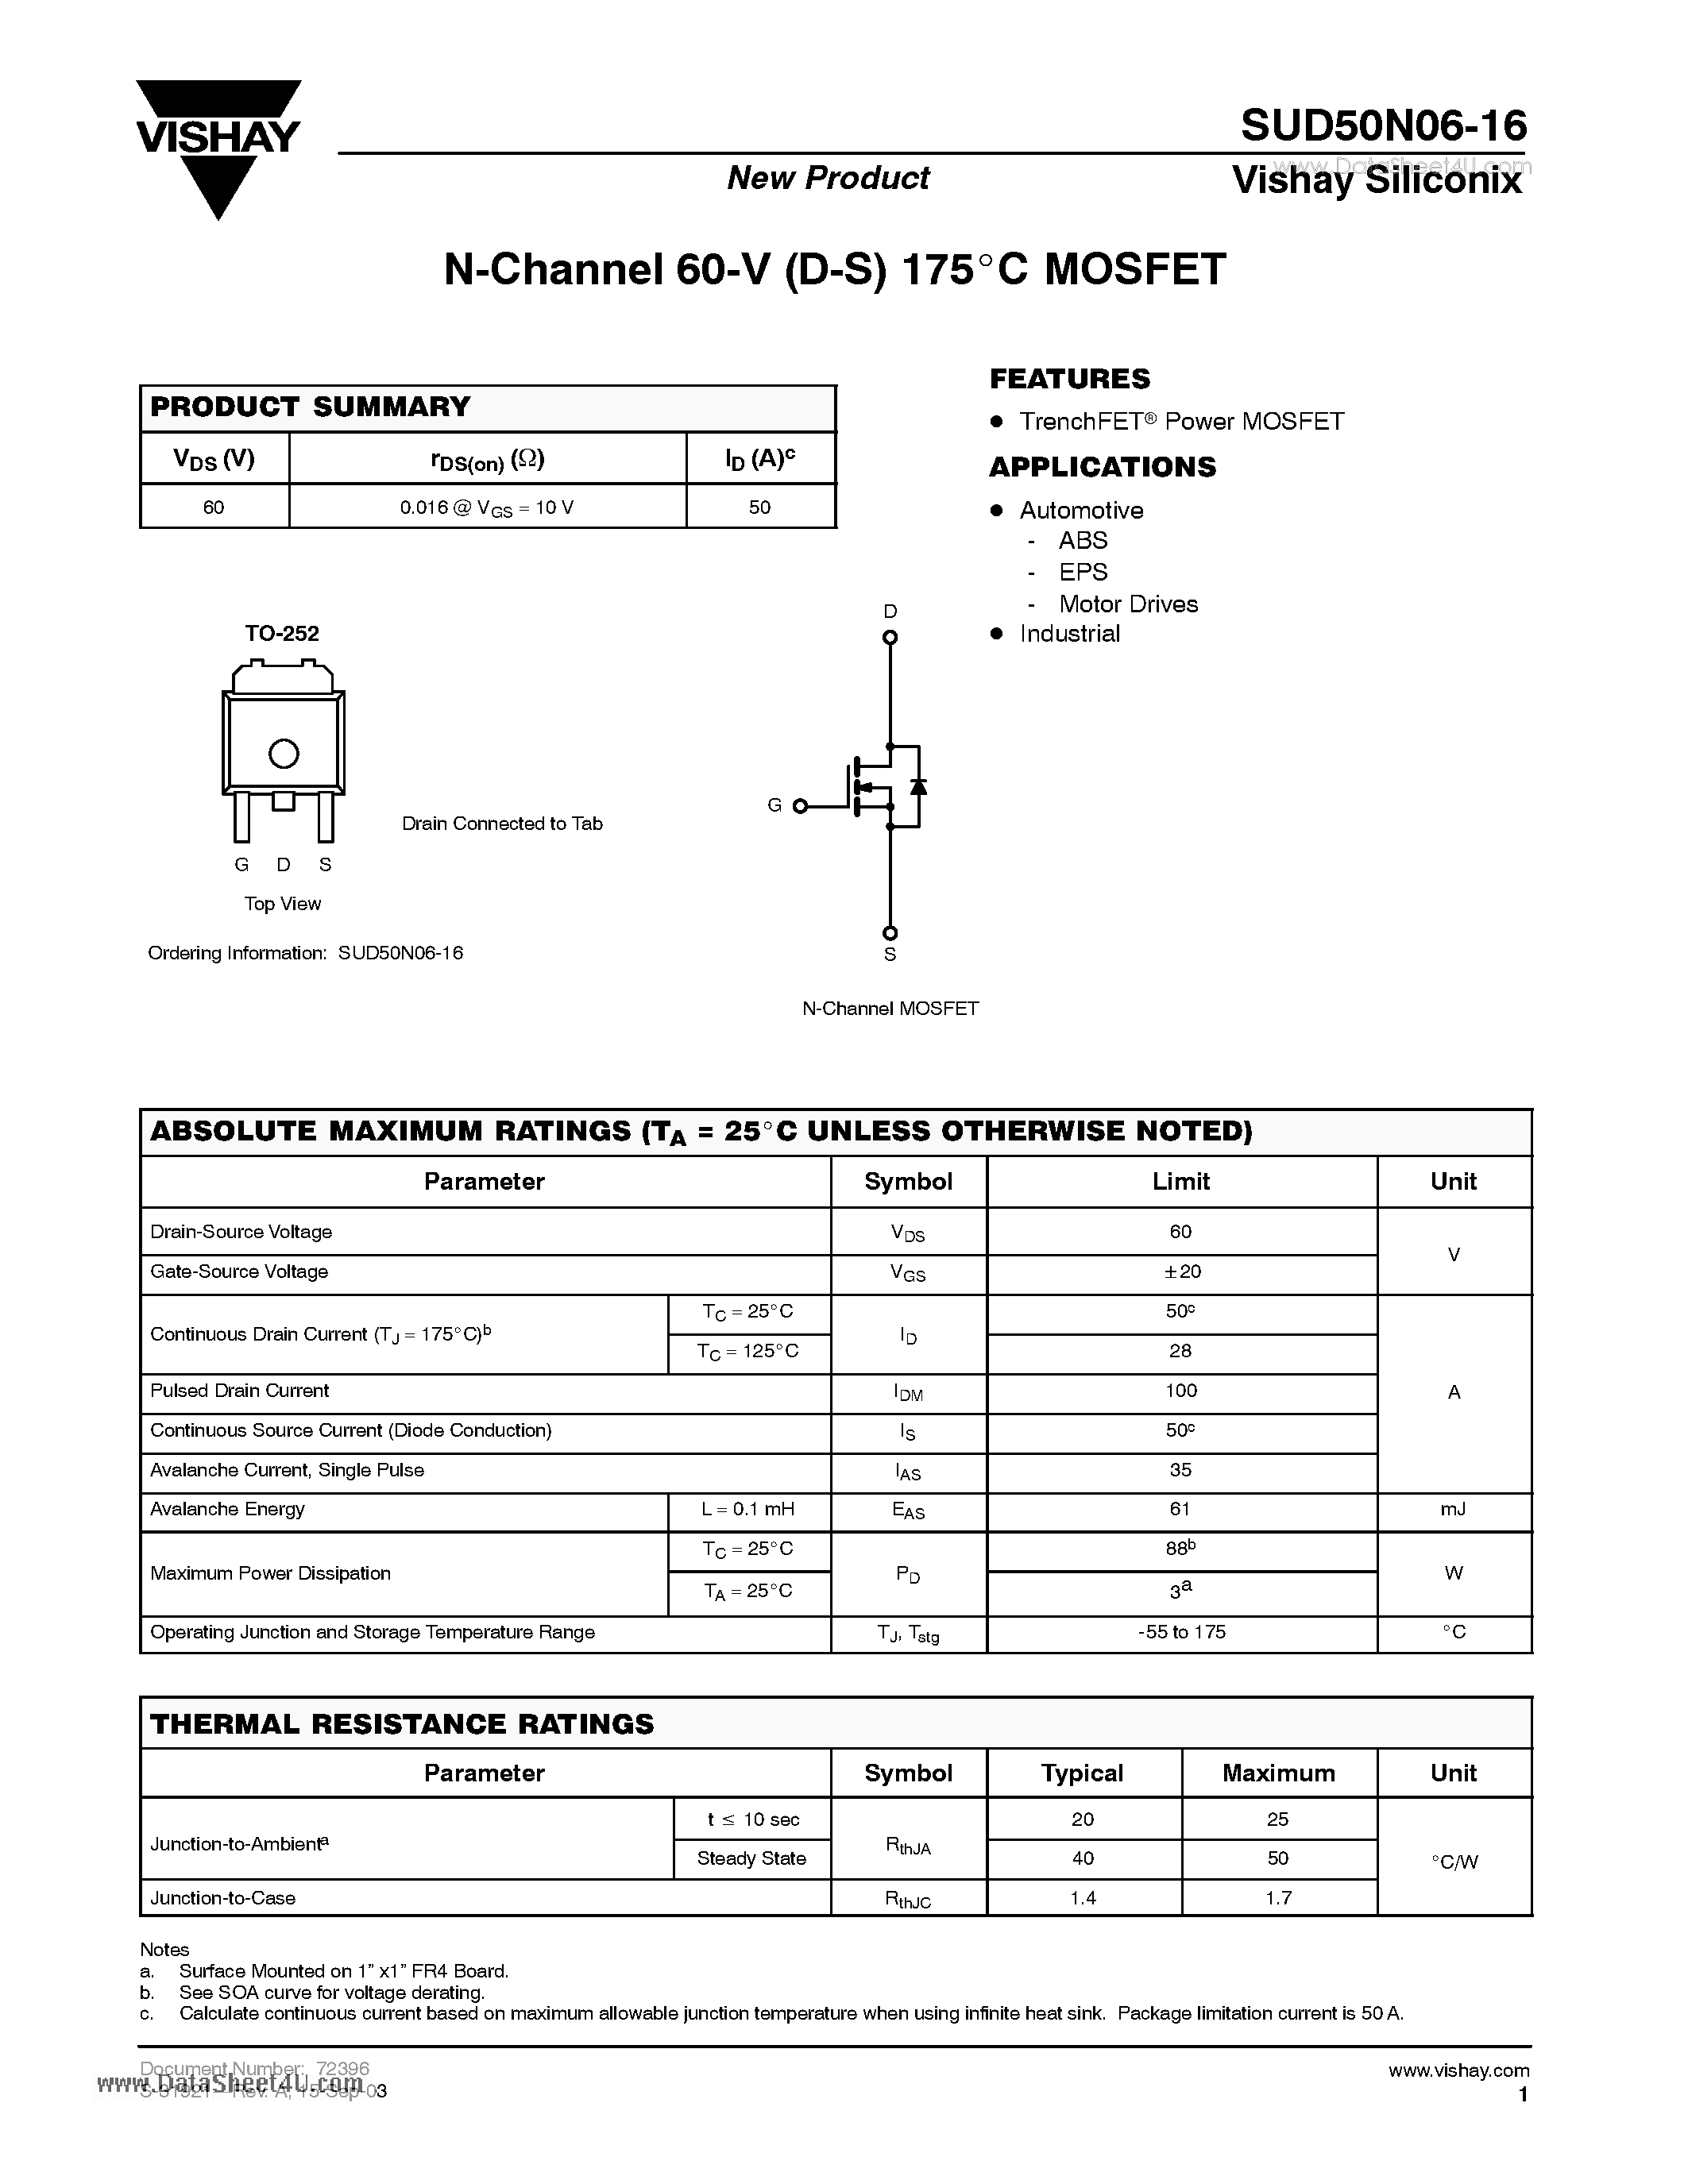 Даташит SUD50N06-16 - N-Channel 60-V (D-S) 175 C MOSFET страница 1